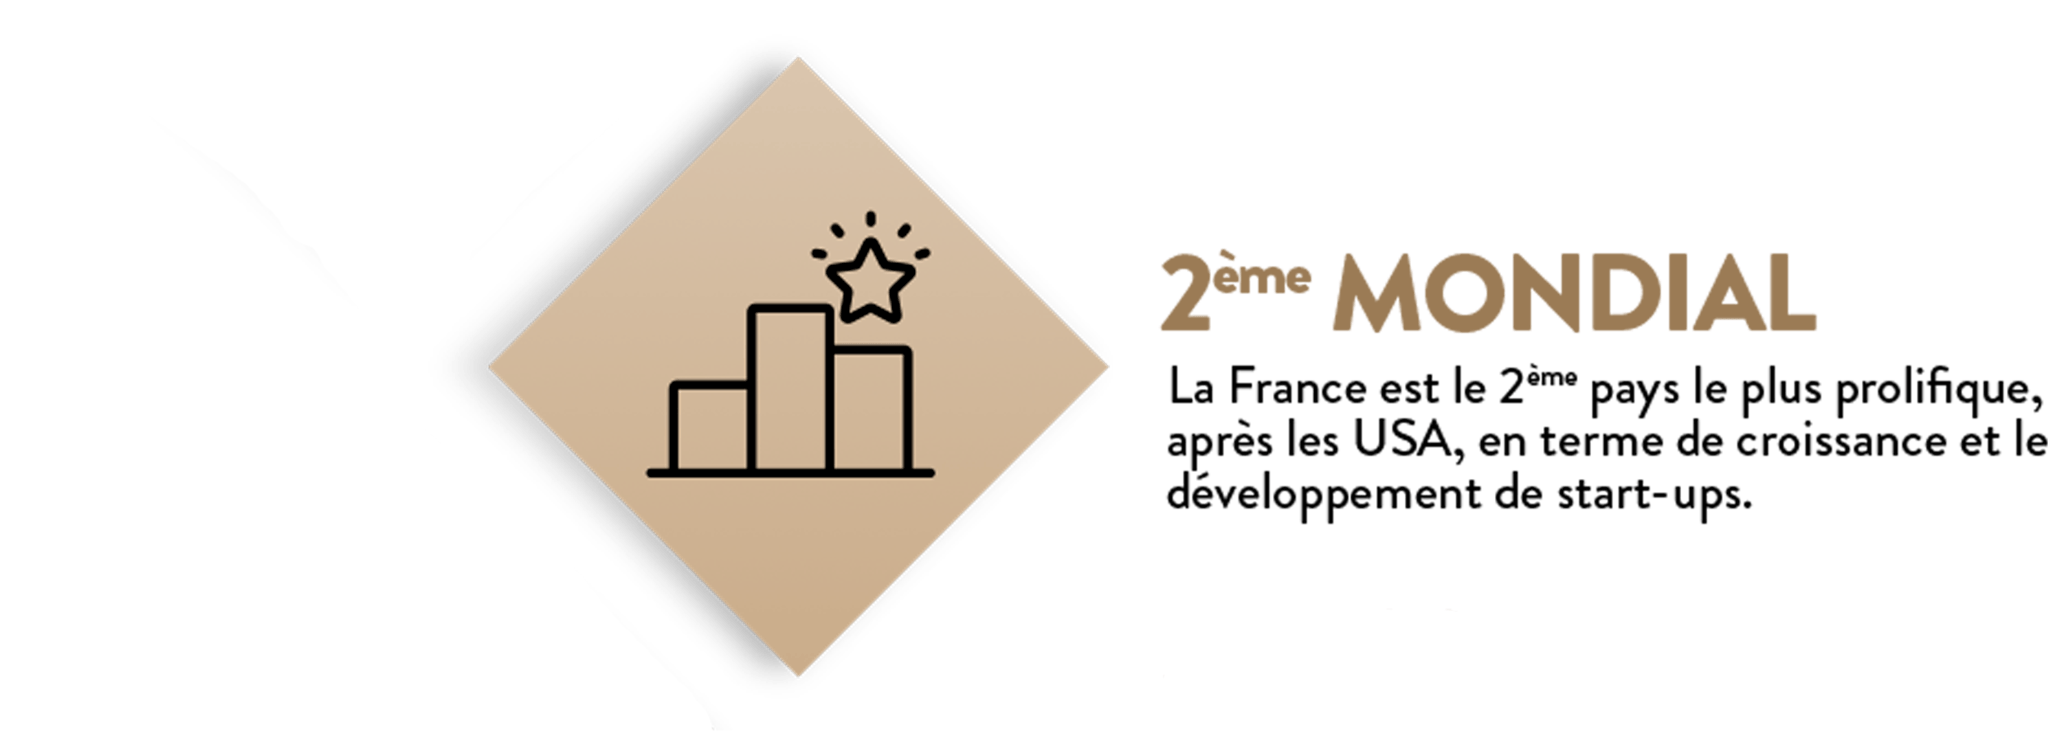 La France est le 2ème pays le plus prolifique, après les USA, en terme de croissance et le développement de start-ups.